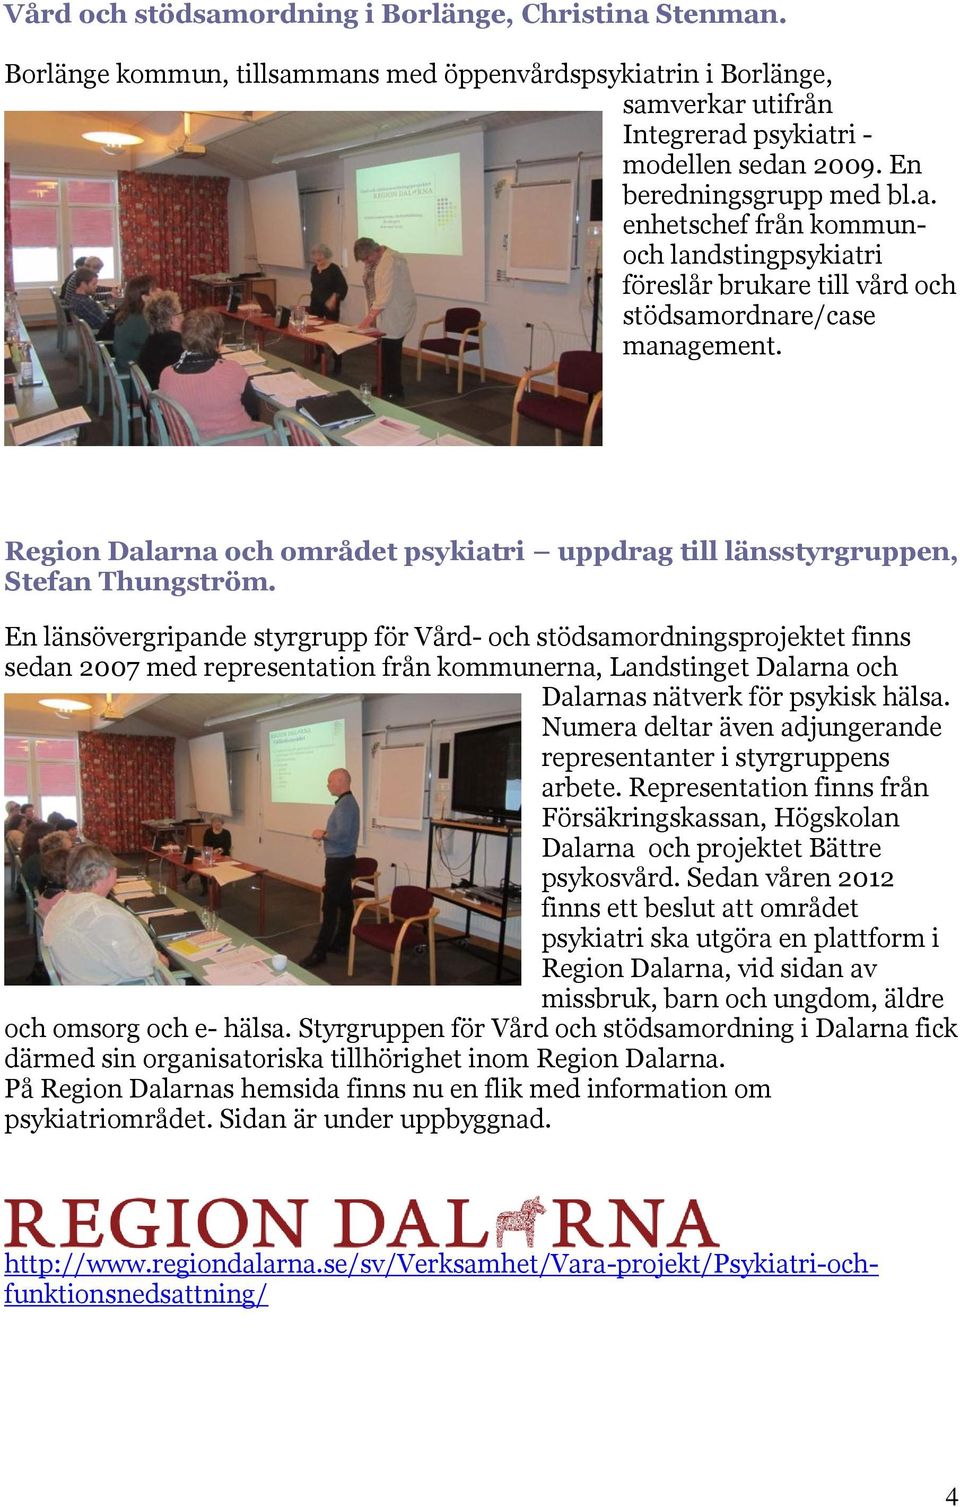 Region Dalarna och området psykiatri uppdrag till länsstyrgruppen, Stefan Thungström.